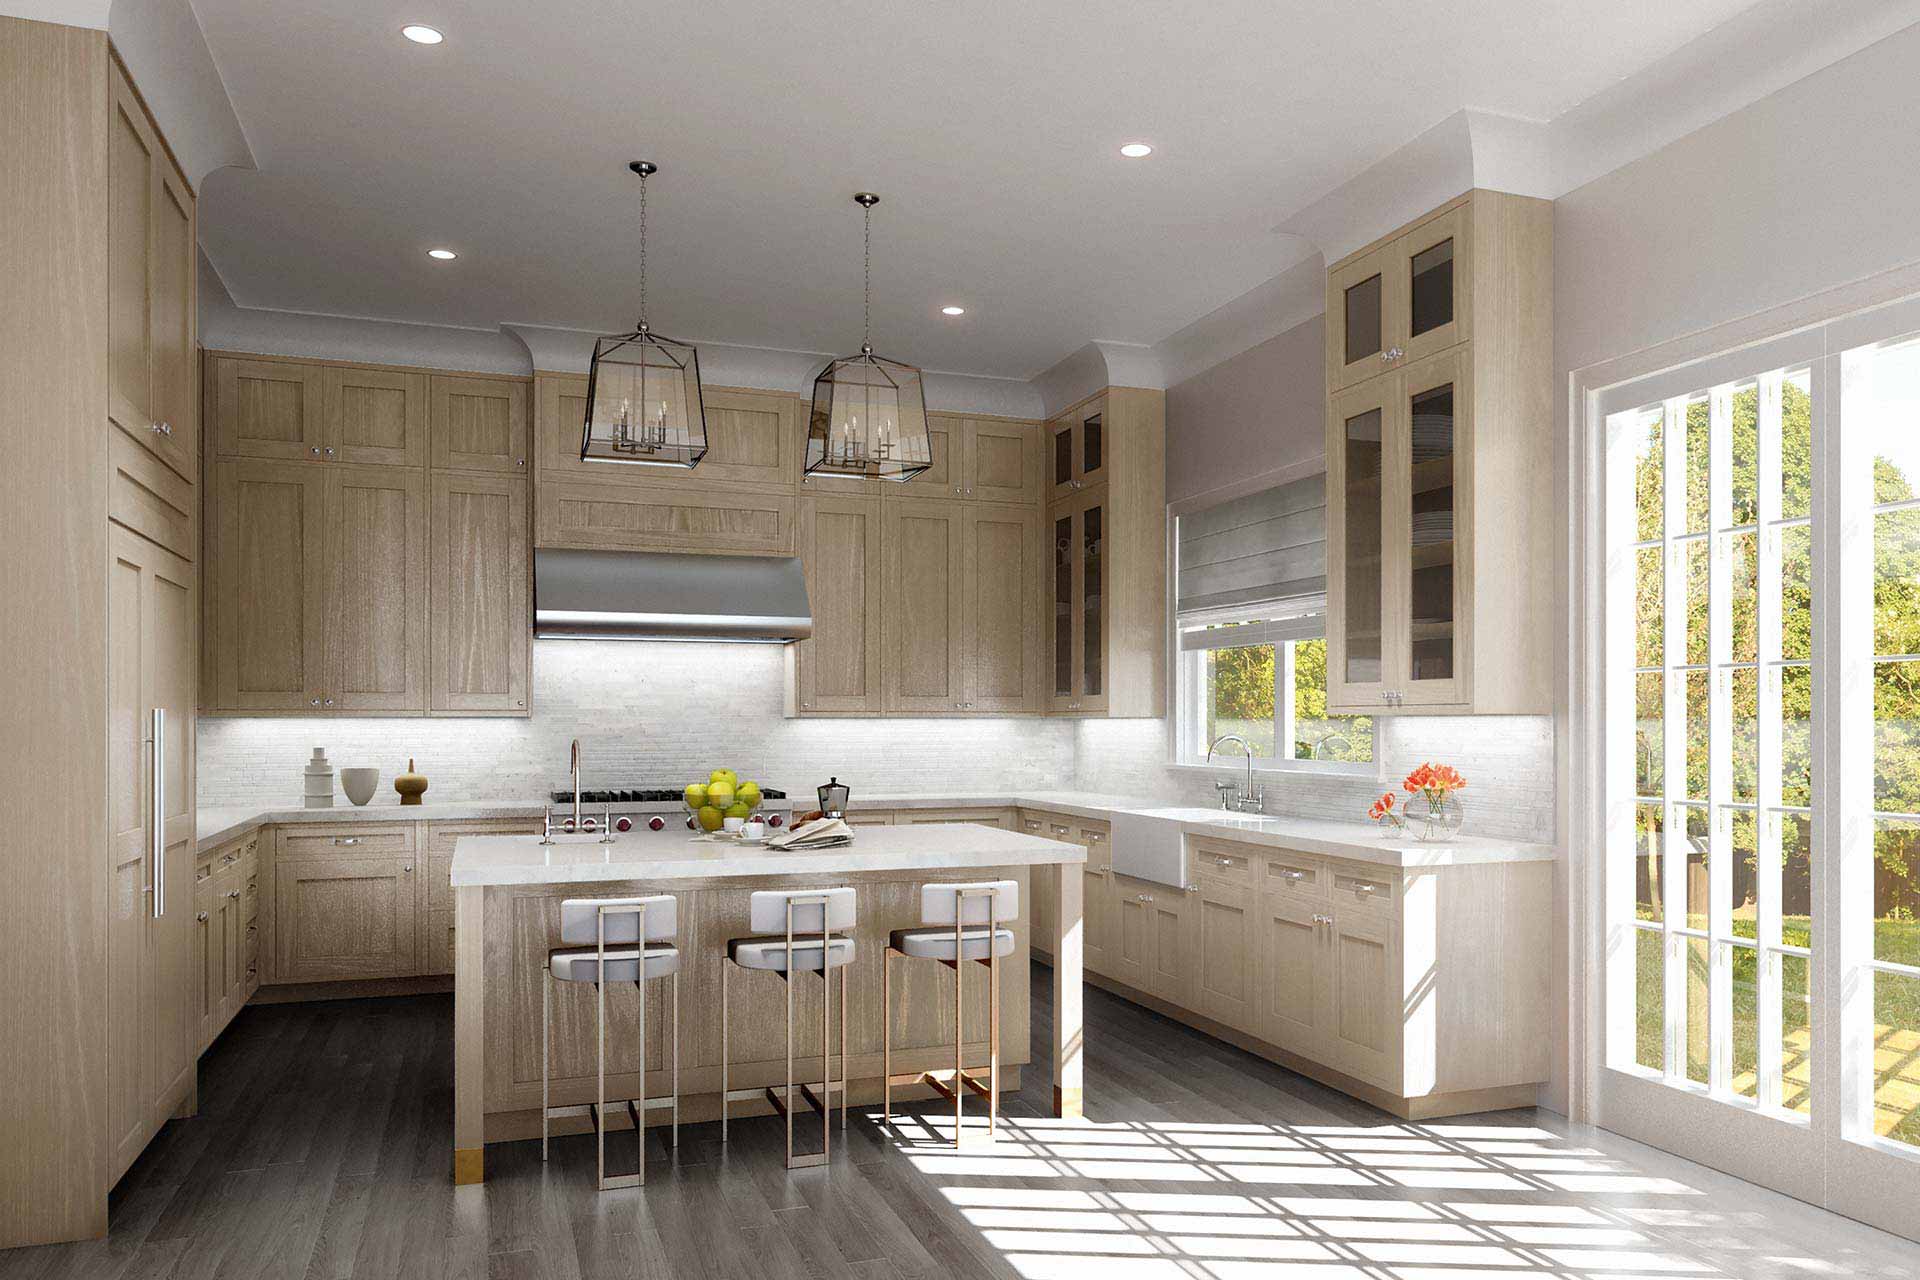 Kitchen interior rendering in Hamptons